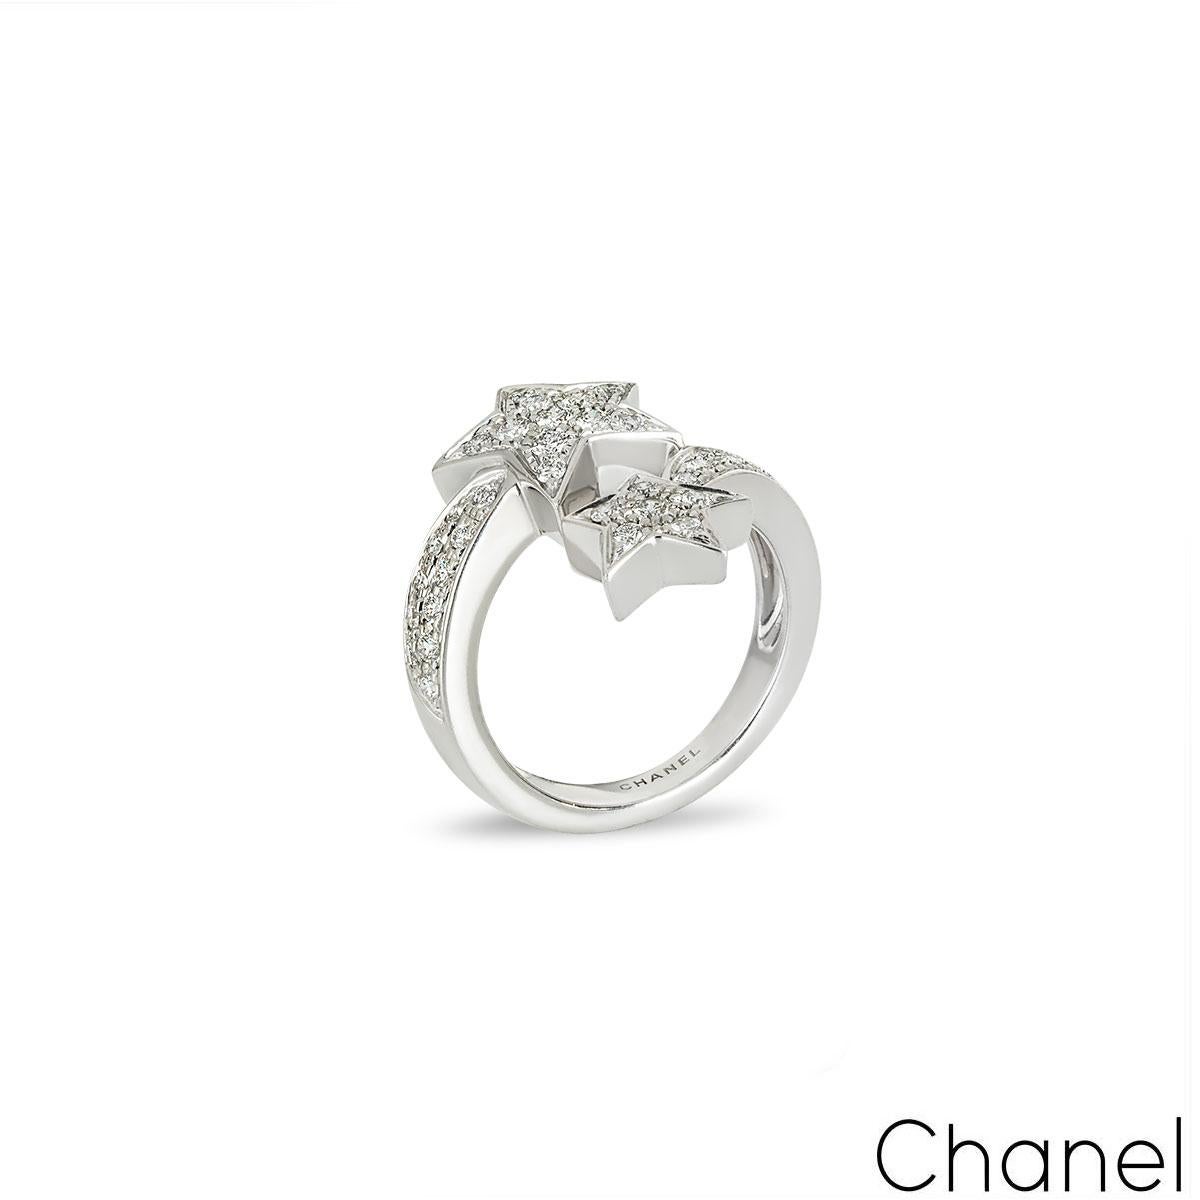 Ein atemberaubender Diamantring aus 18 Karat Weißgold von Chanel aus der Comete Collection. Der Ring besteht aus zwei Sternschnuppenmotiven mit runden Diamanten im Brillantschliff, die mit einem Gesamtgewicht von ca. 0,65 ct, Farbe D-F und Reinheit